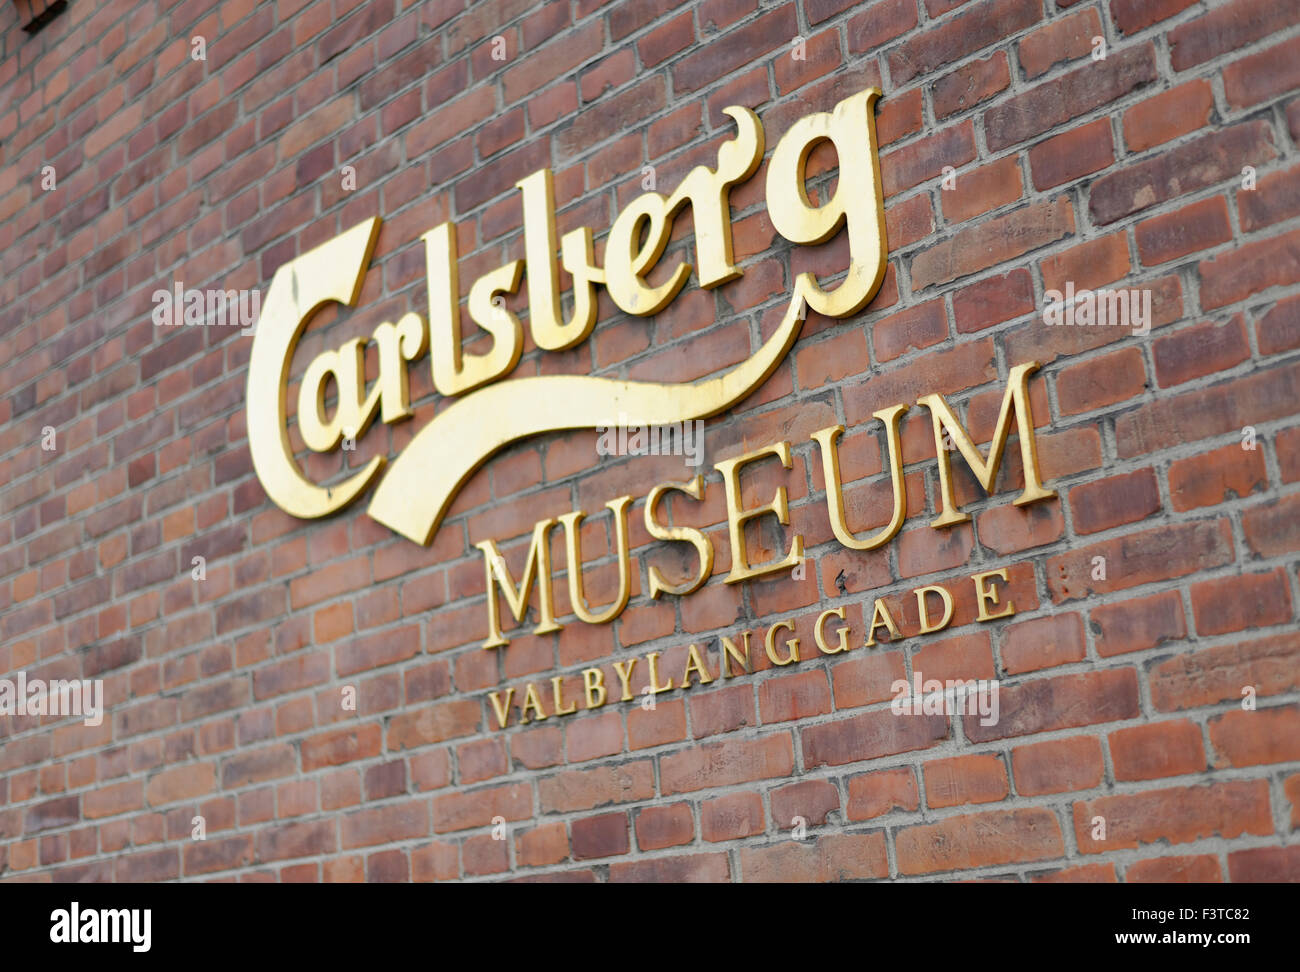 Sign for the Carlsberg Museum, Copenhagen Denmark Stock Photo